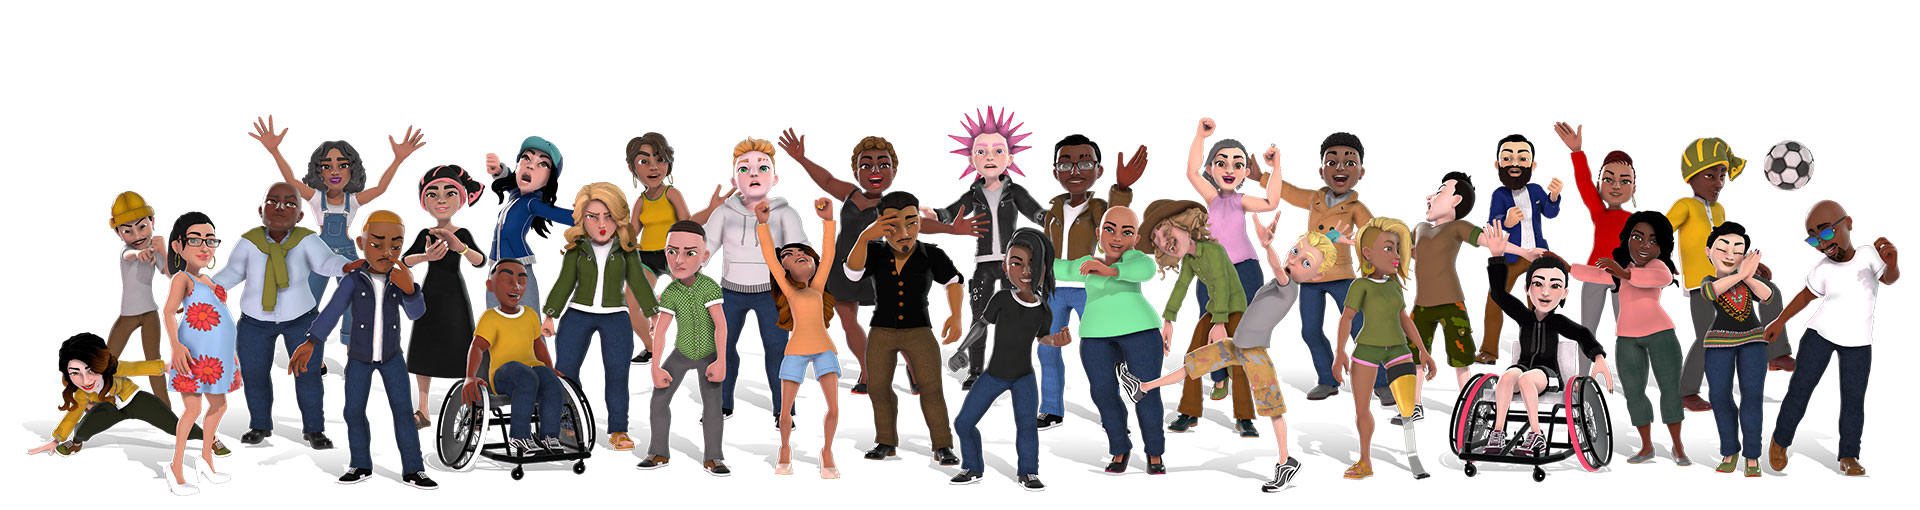 Аватары Xbox, демонстрирующие группу людей в различных нарядах, символизирующую идею разнообразия